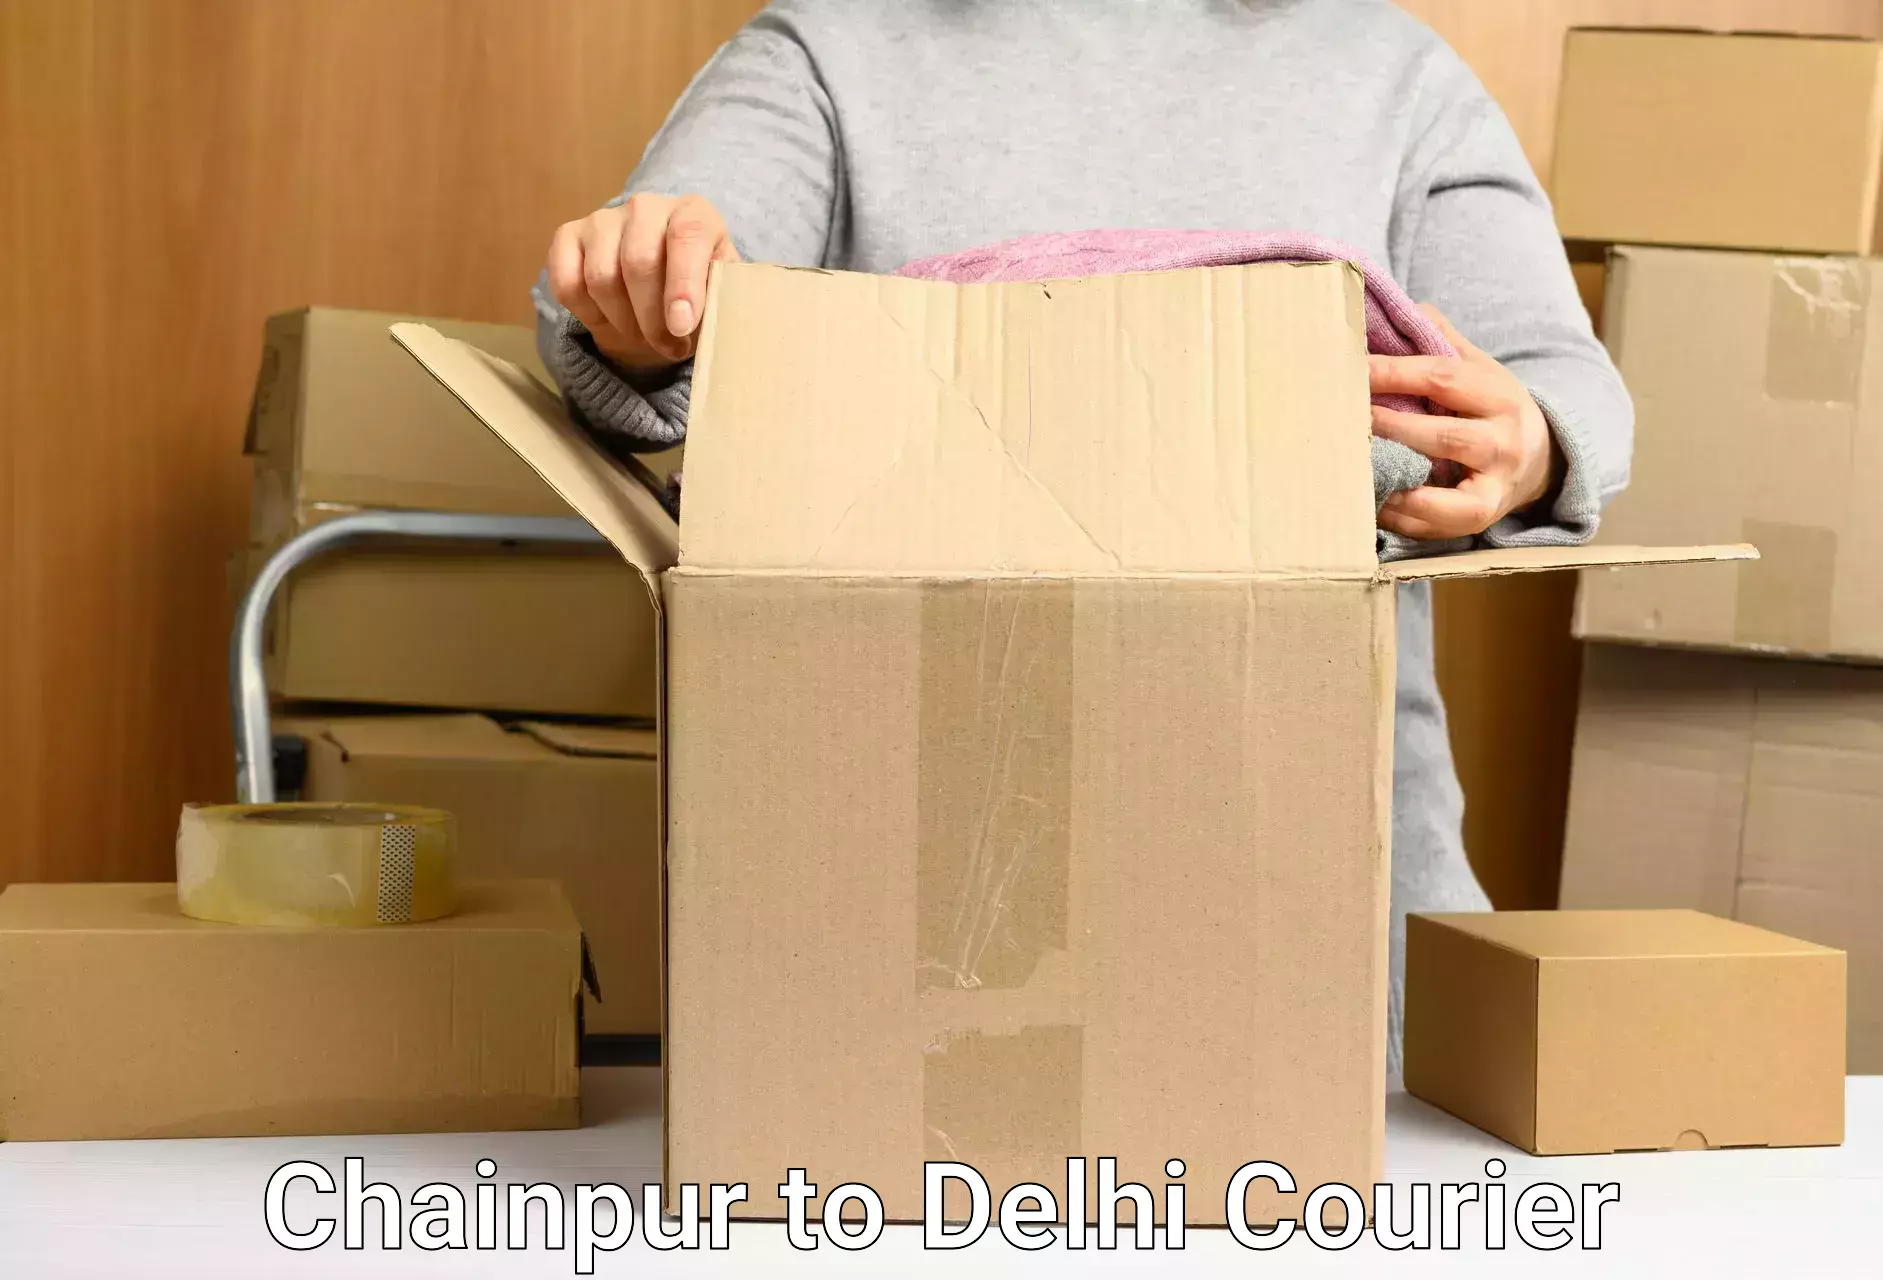 Premium courier services Chainpur to Jawaharlal Nehru University New Delhi